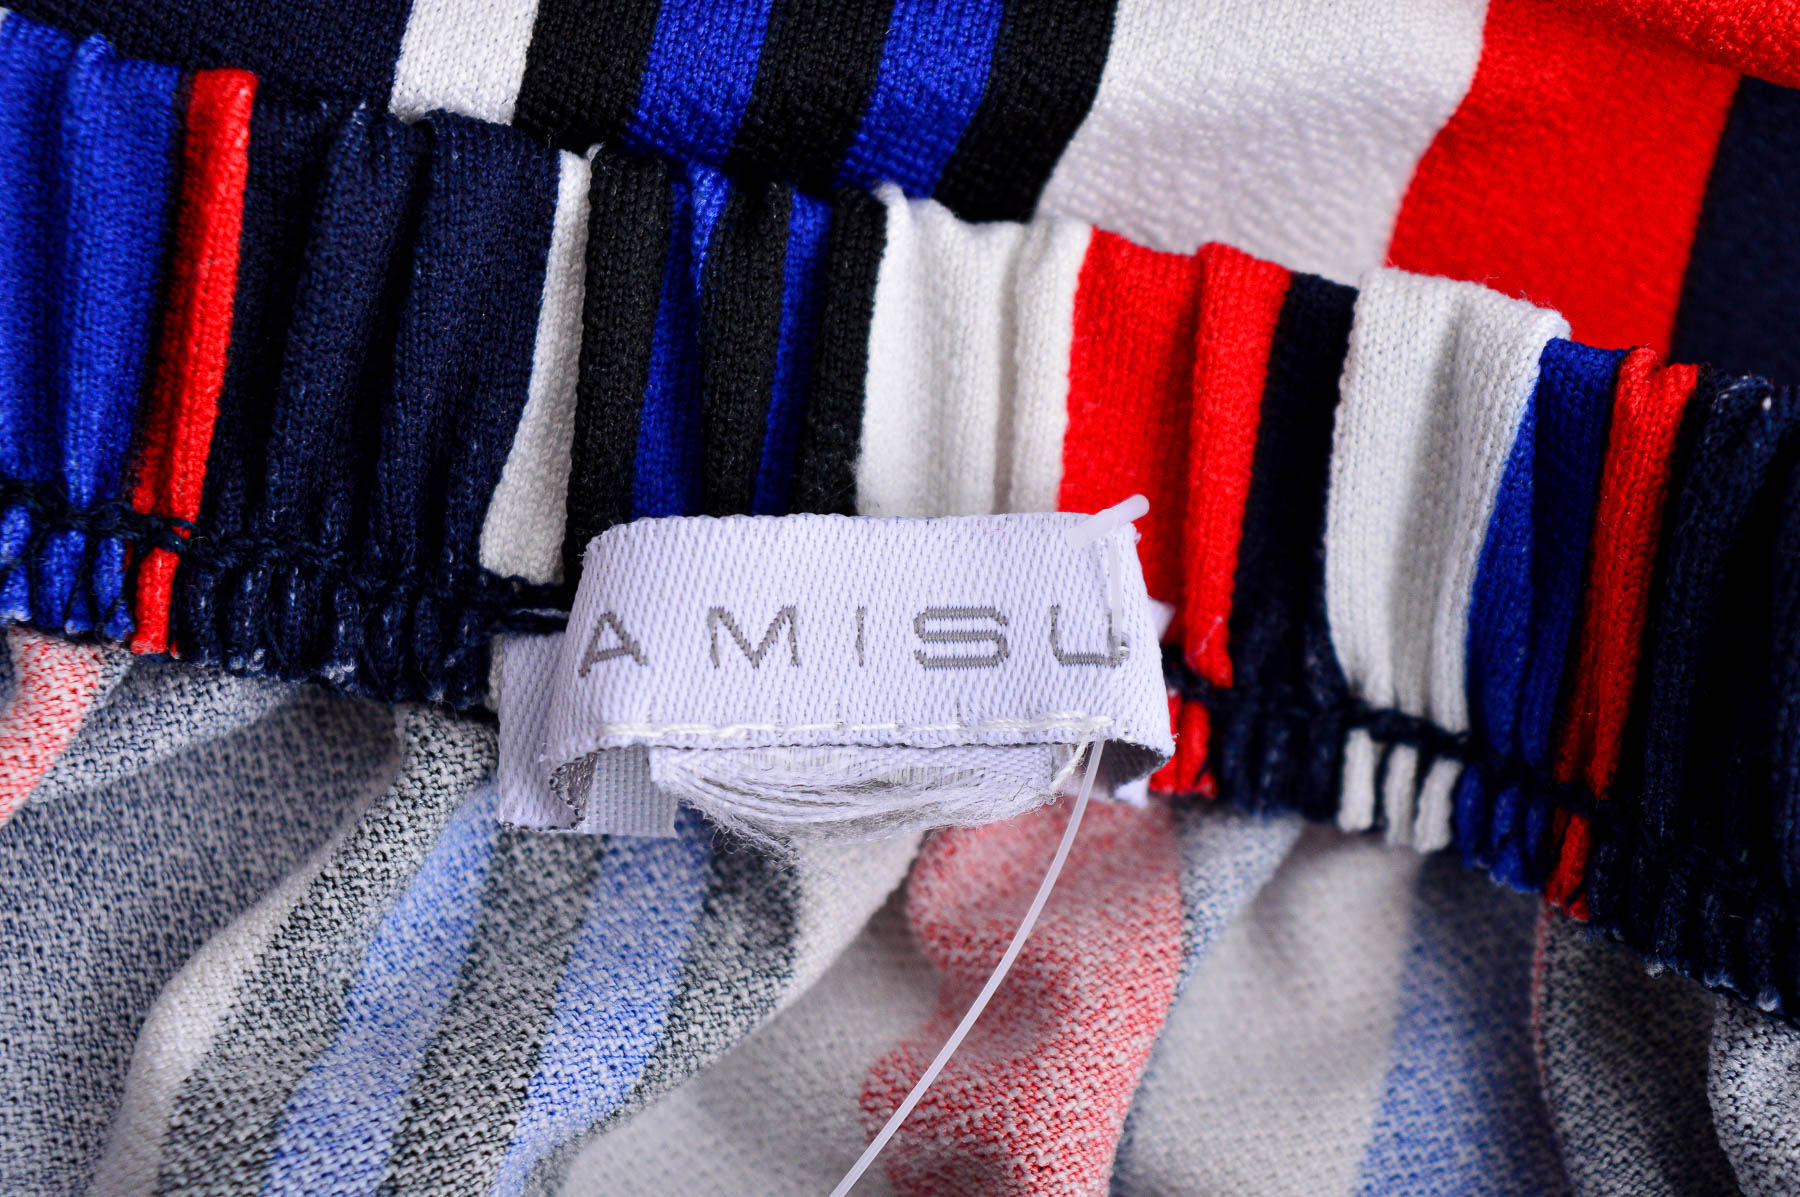 Γυναικεία μπλούζα - AMISU - 2